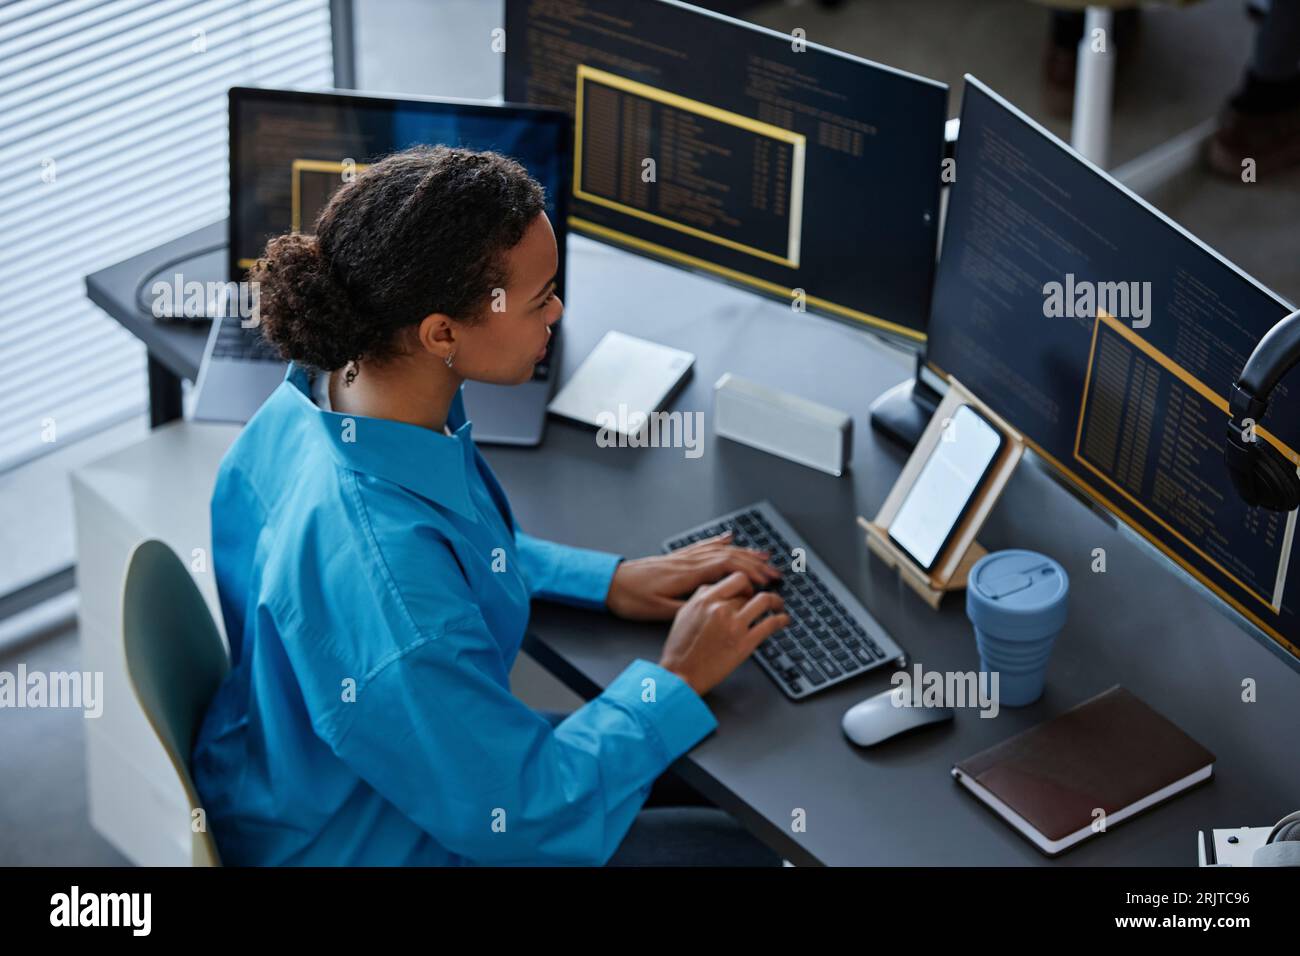 INFORMATIQUE professionnelle tapant sur le clavier et utilisant l'ordinateur au bureau Banque D'Images